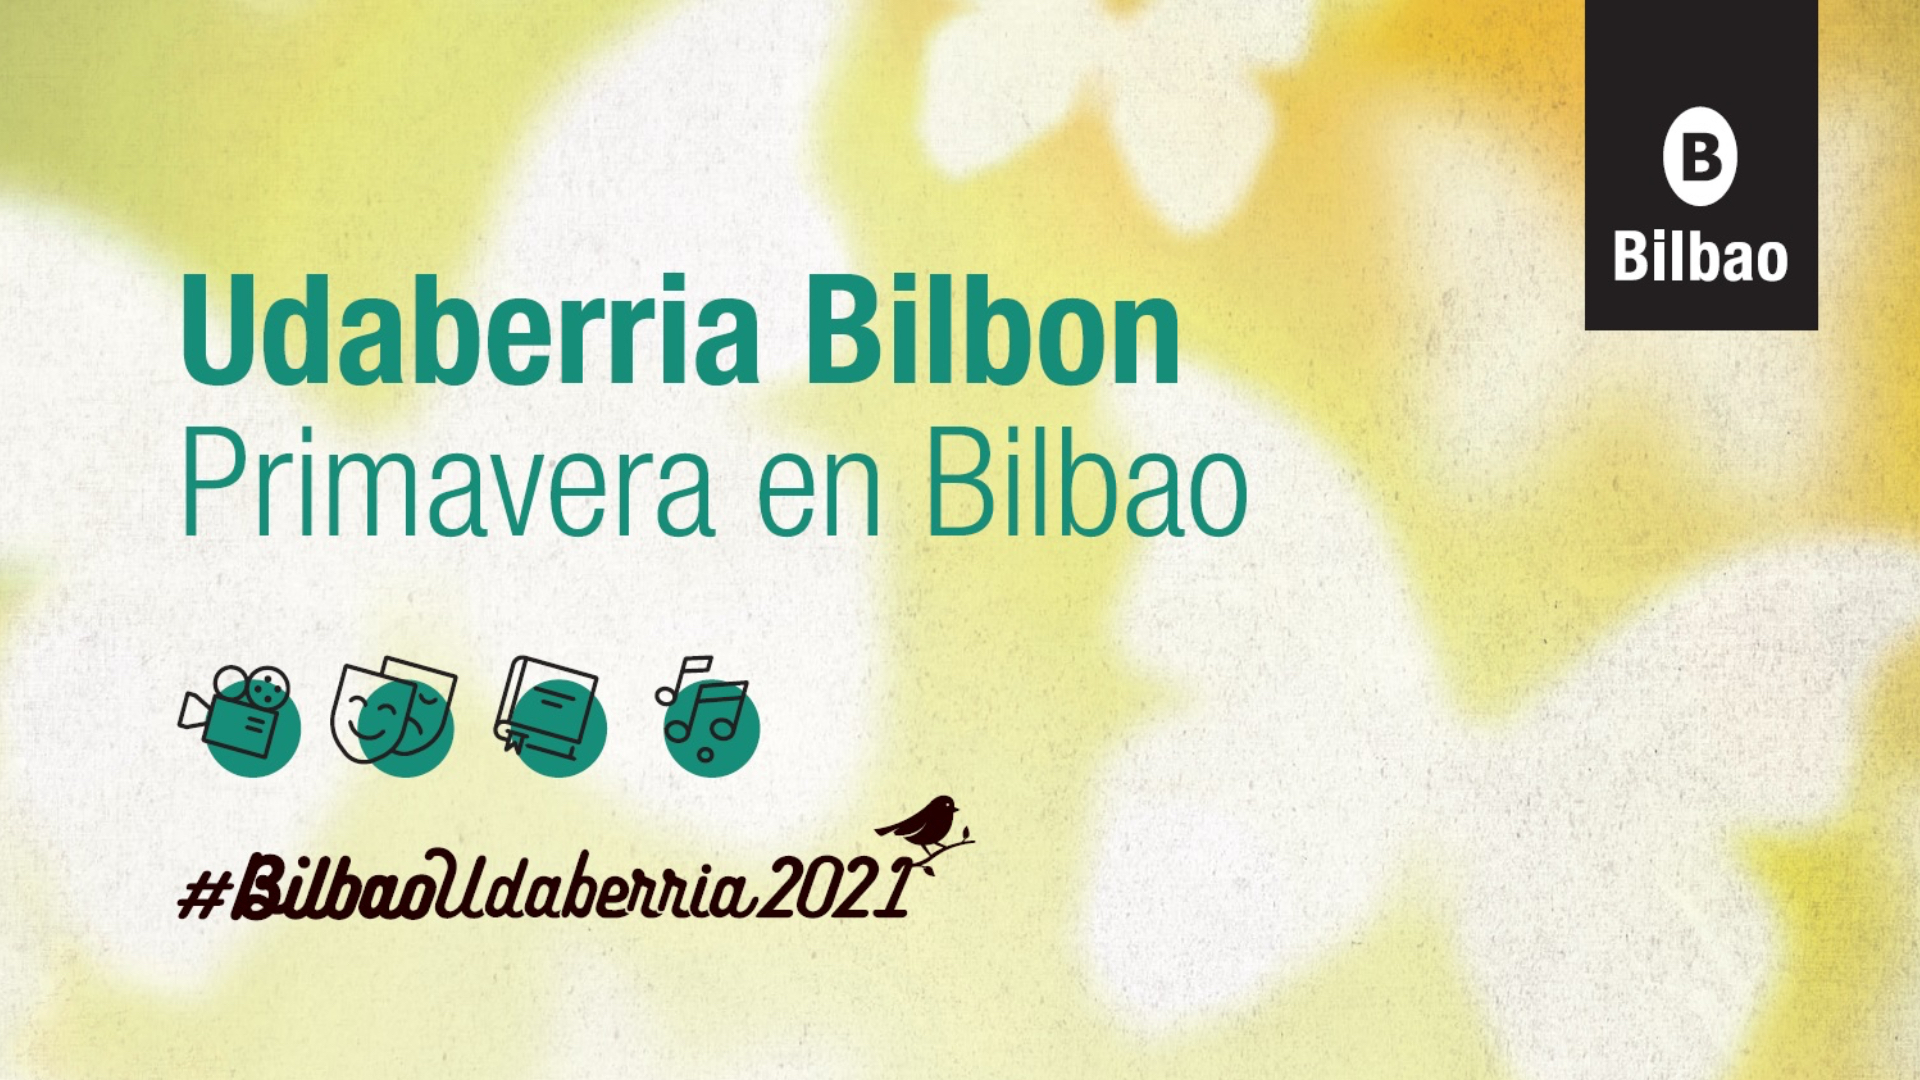 El Ayuntamiento de Bilbao propone nuevos planes dentro de #BILBAOUDABERRIA2021 entre el 19 y 23 de abril